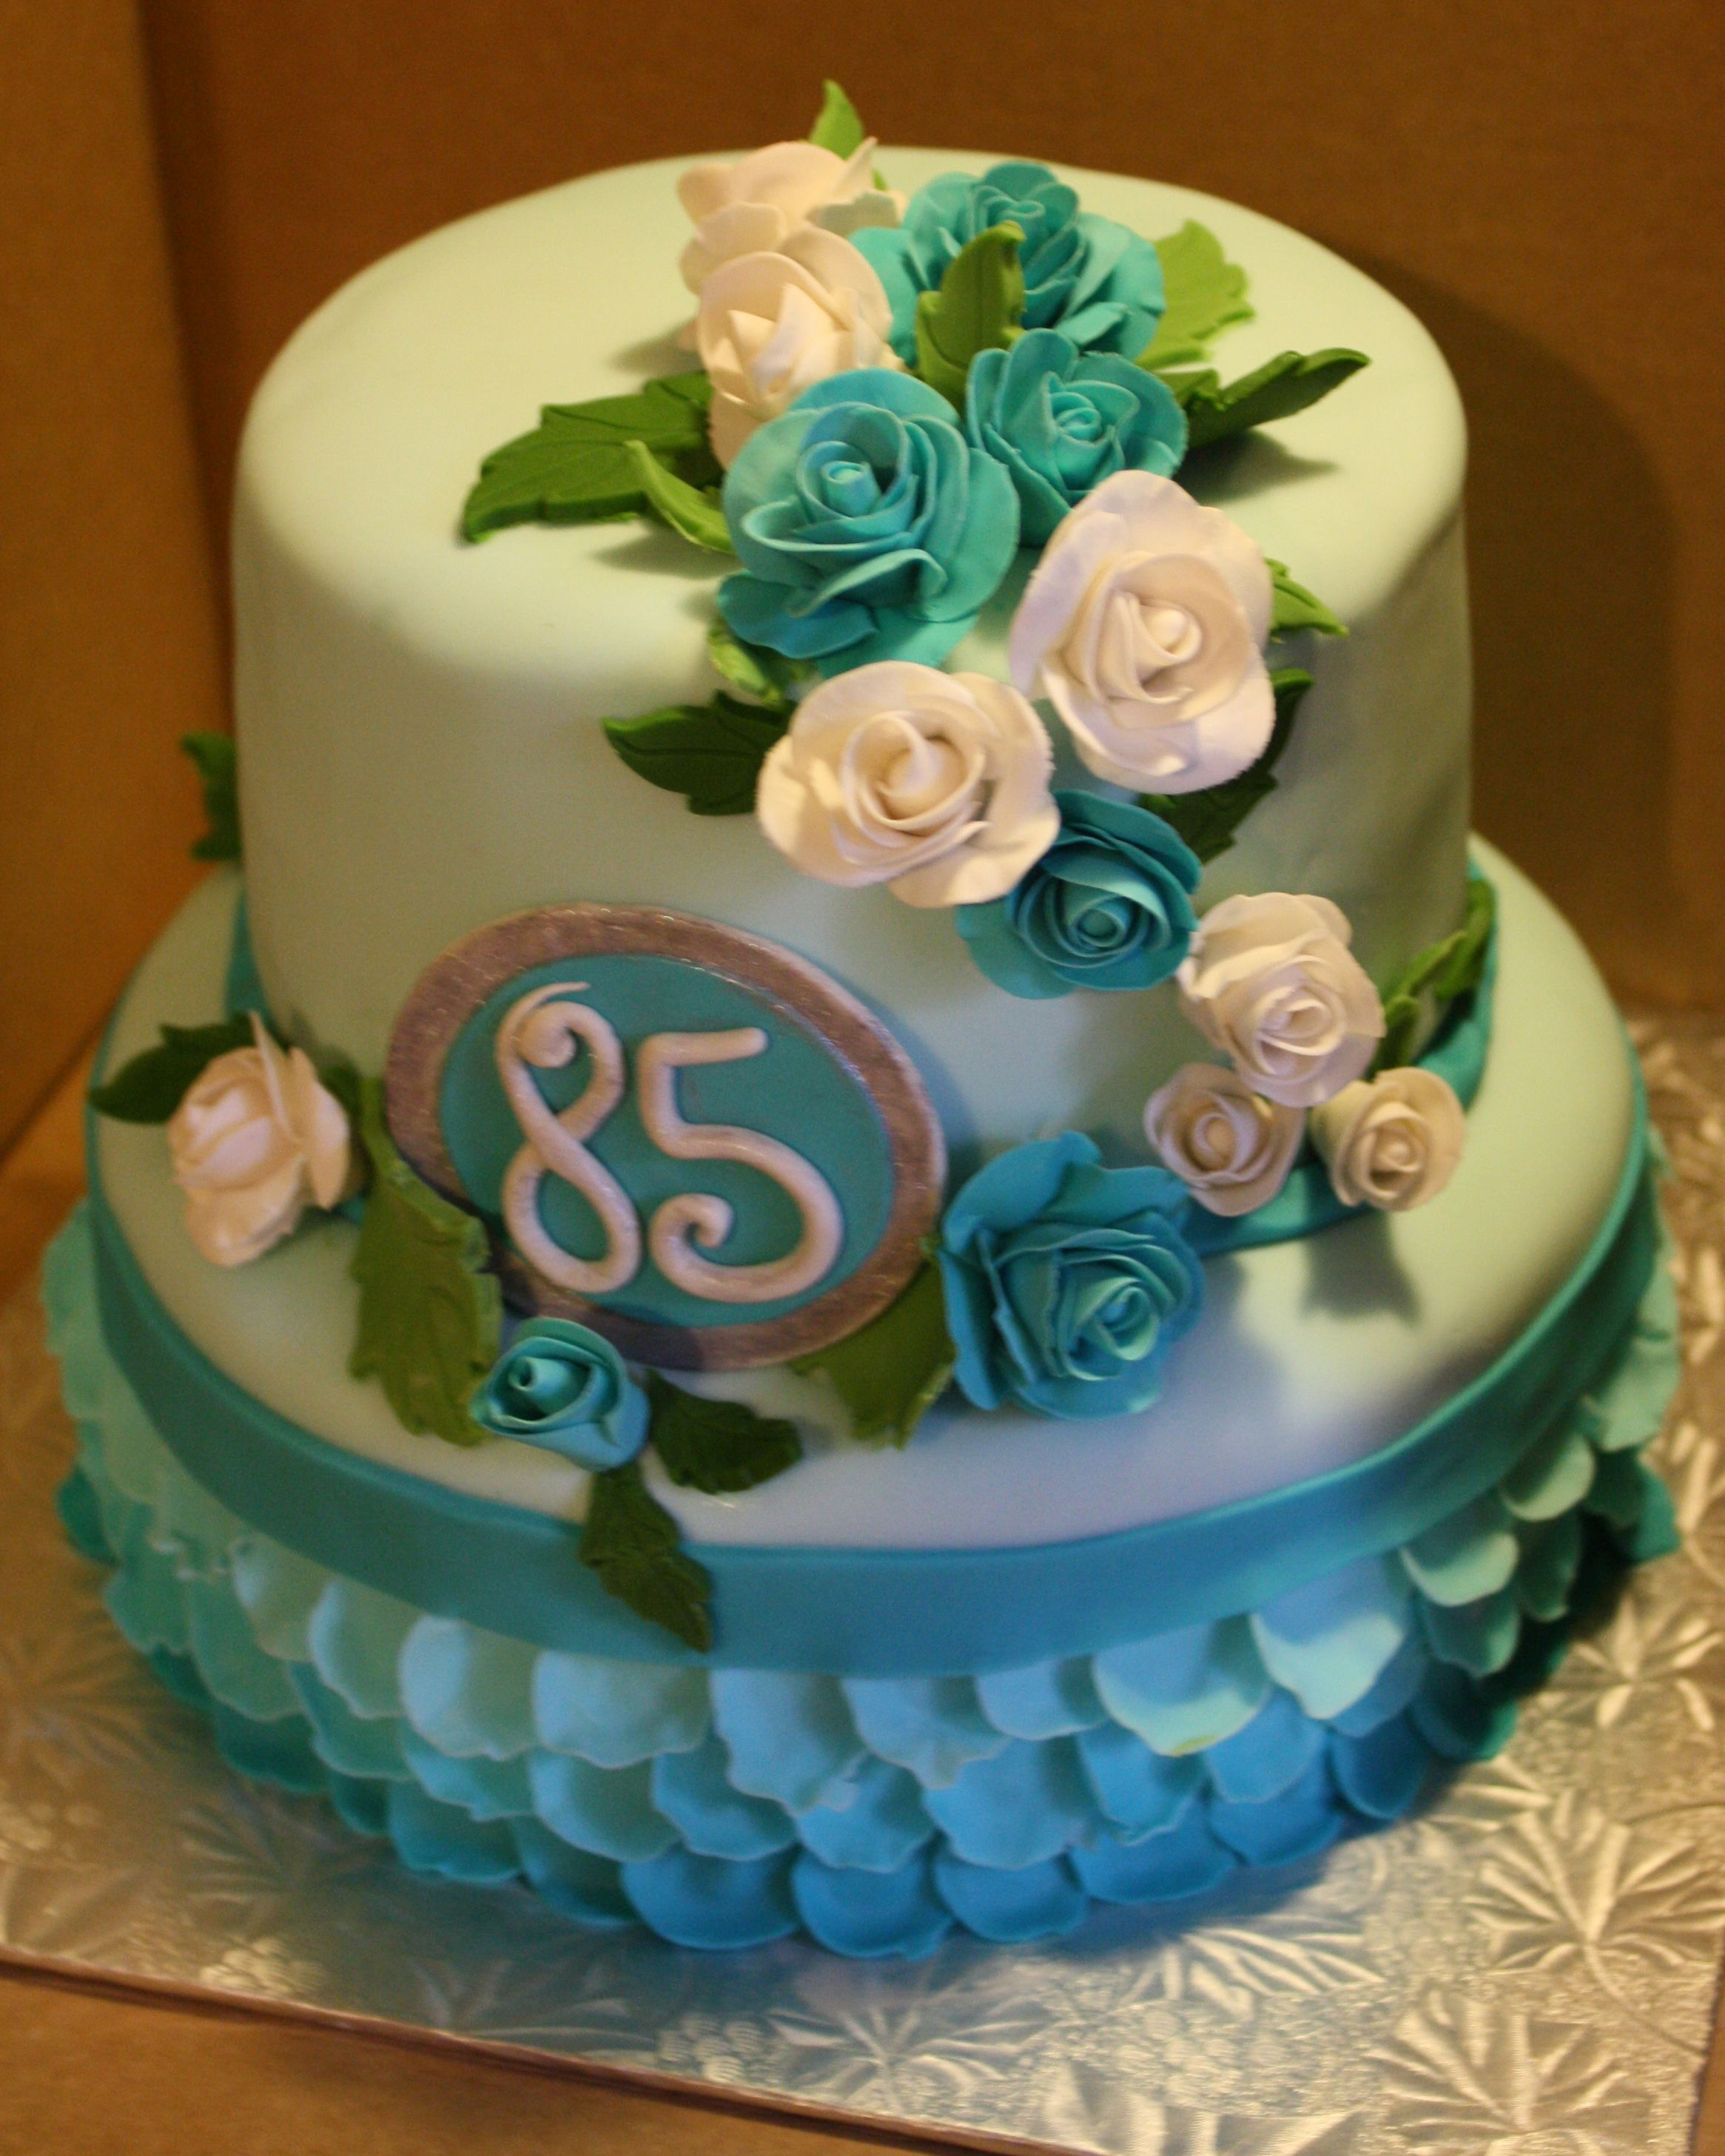 85Th Birthday Cake 85th Birthday Cake Birthday Pinterest Birthday Cake Cake And